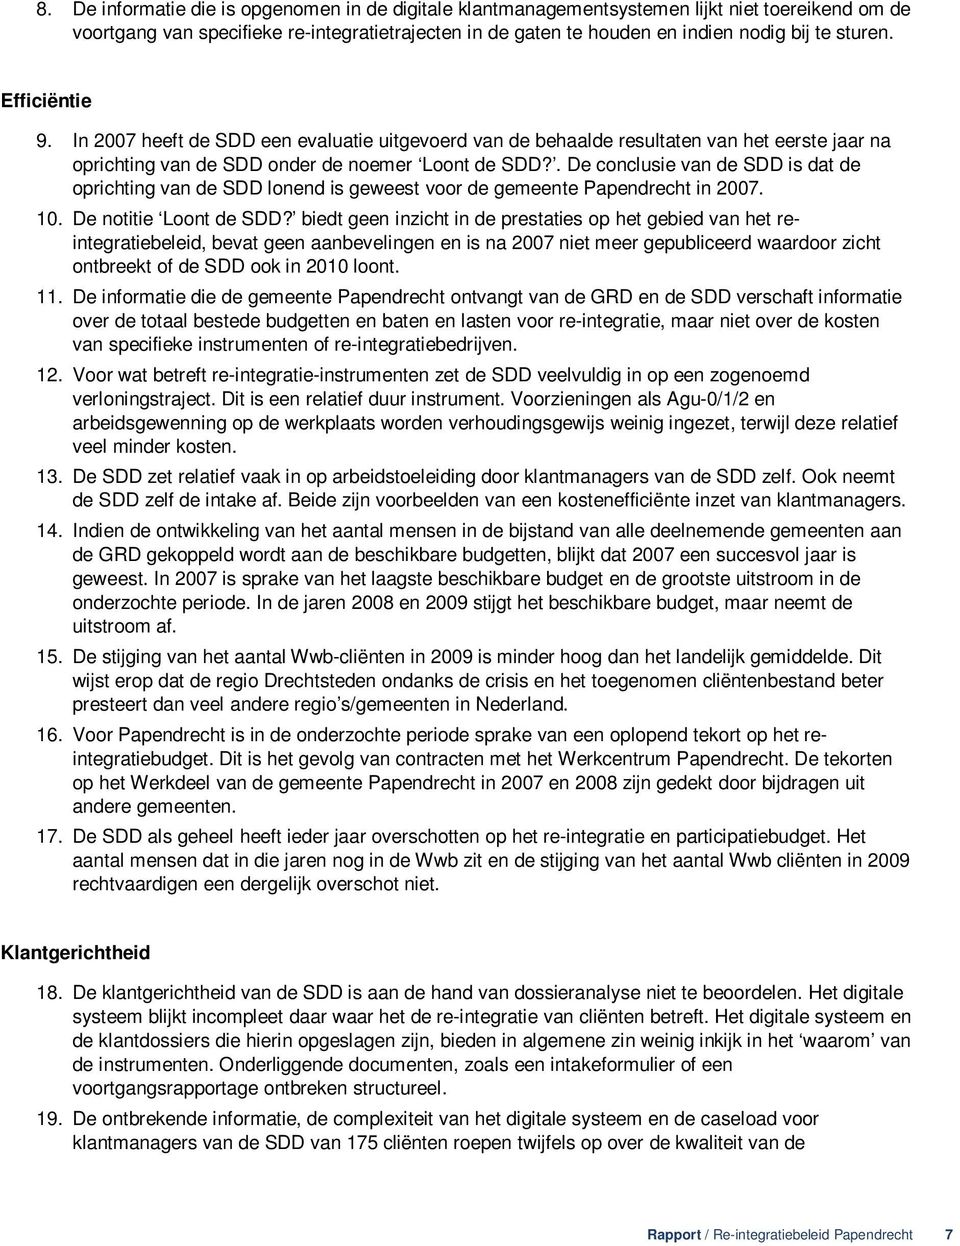 . De conclusie van de SDD is dat de oprichting van de SDD lonend is geweest voor de gemeente Papendrecht in 2007. 10. De notitie Loont de SDD?